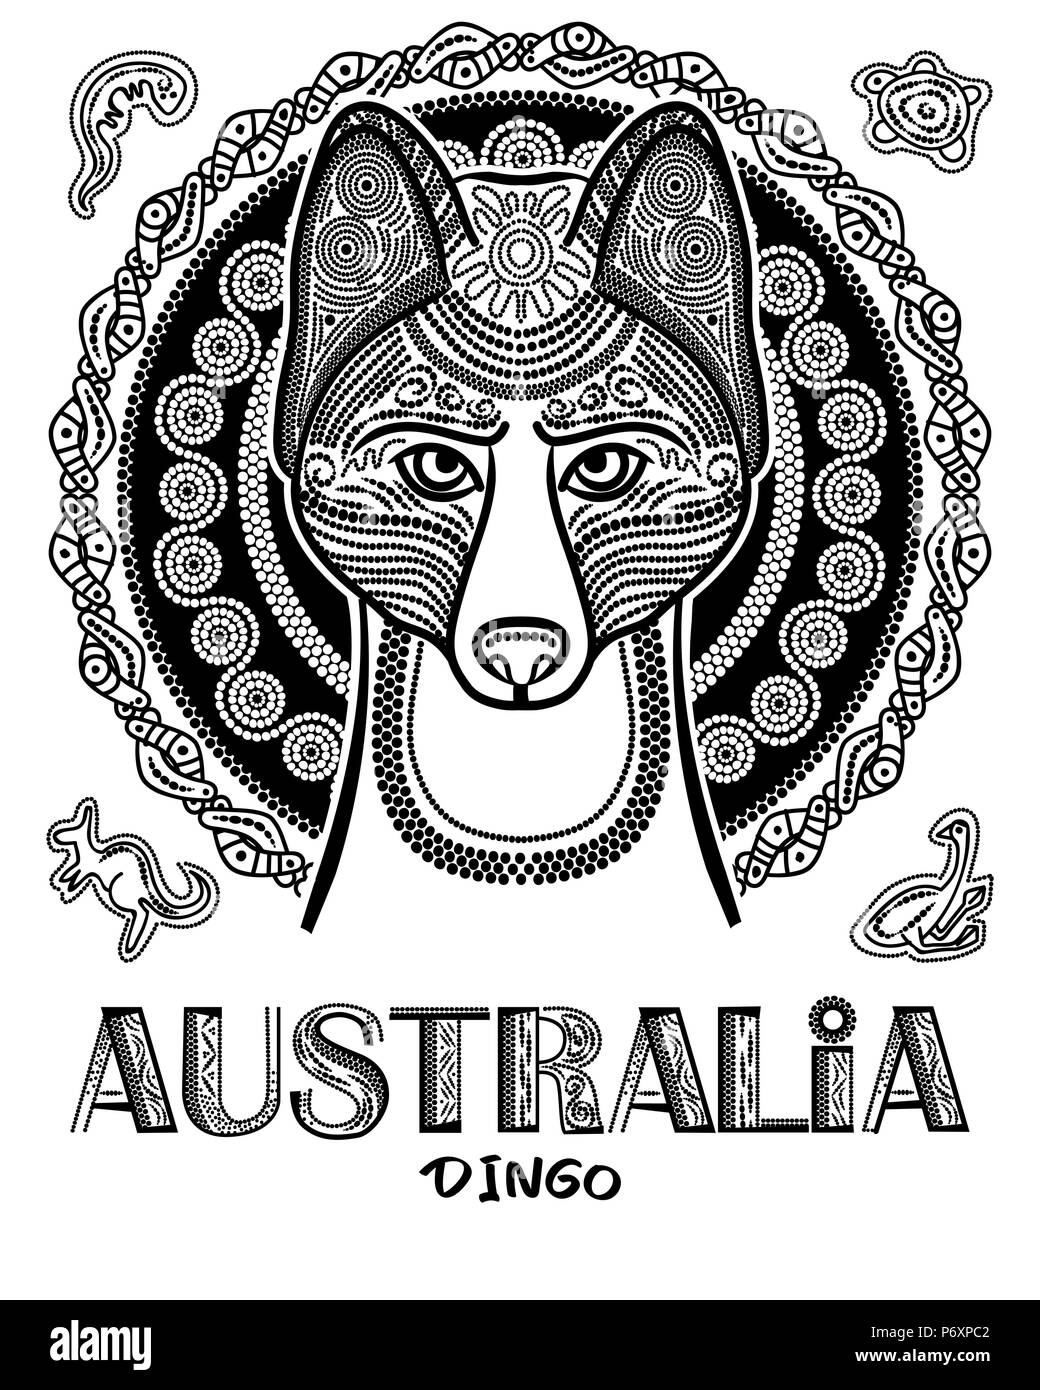 Immagine vettoriale di cane dingo in stile etnico. Aborigeni Australiani style Illustrazione Vettoriale